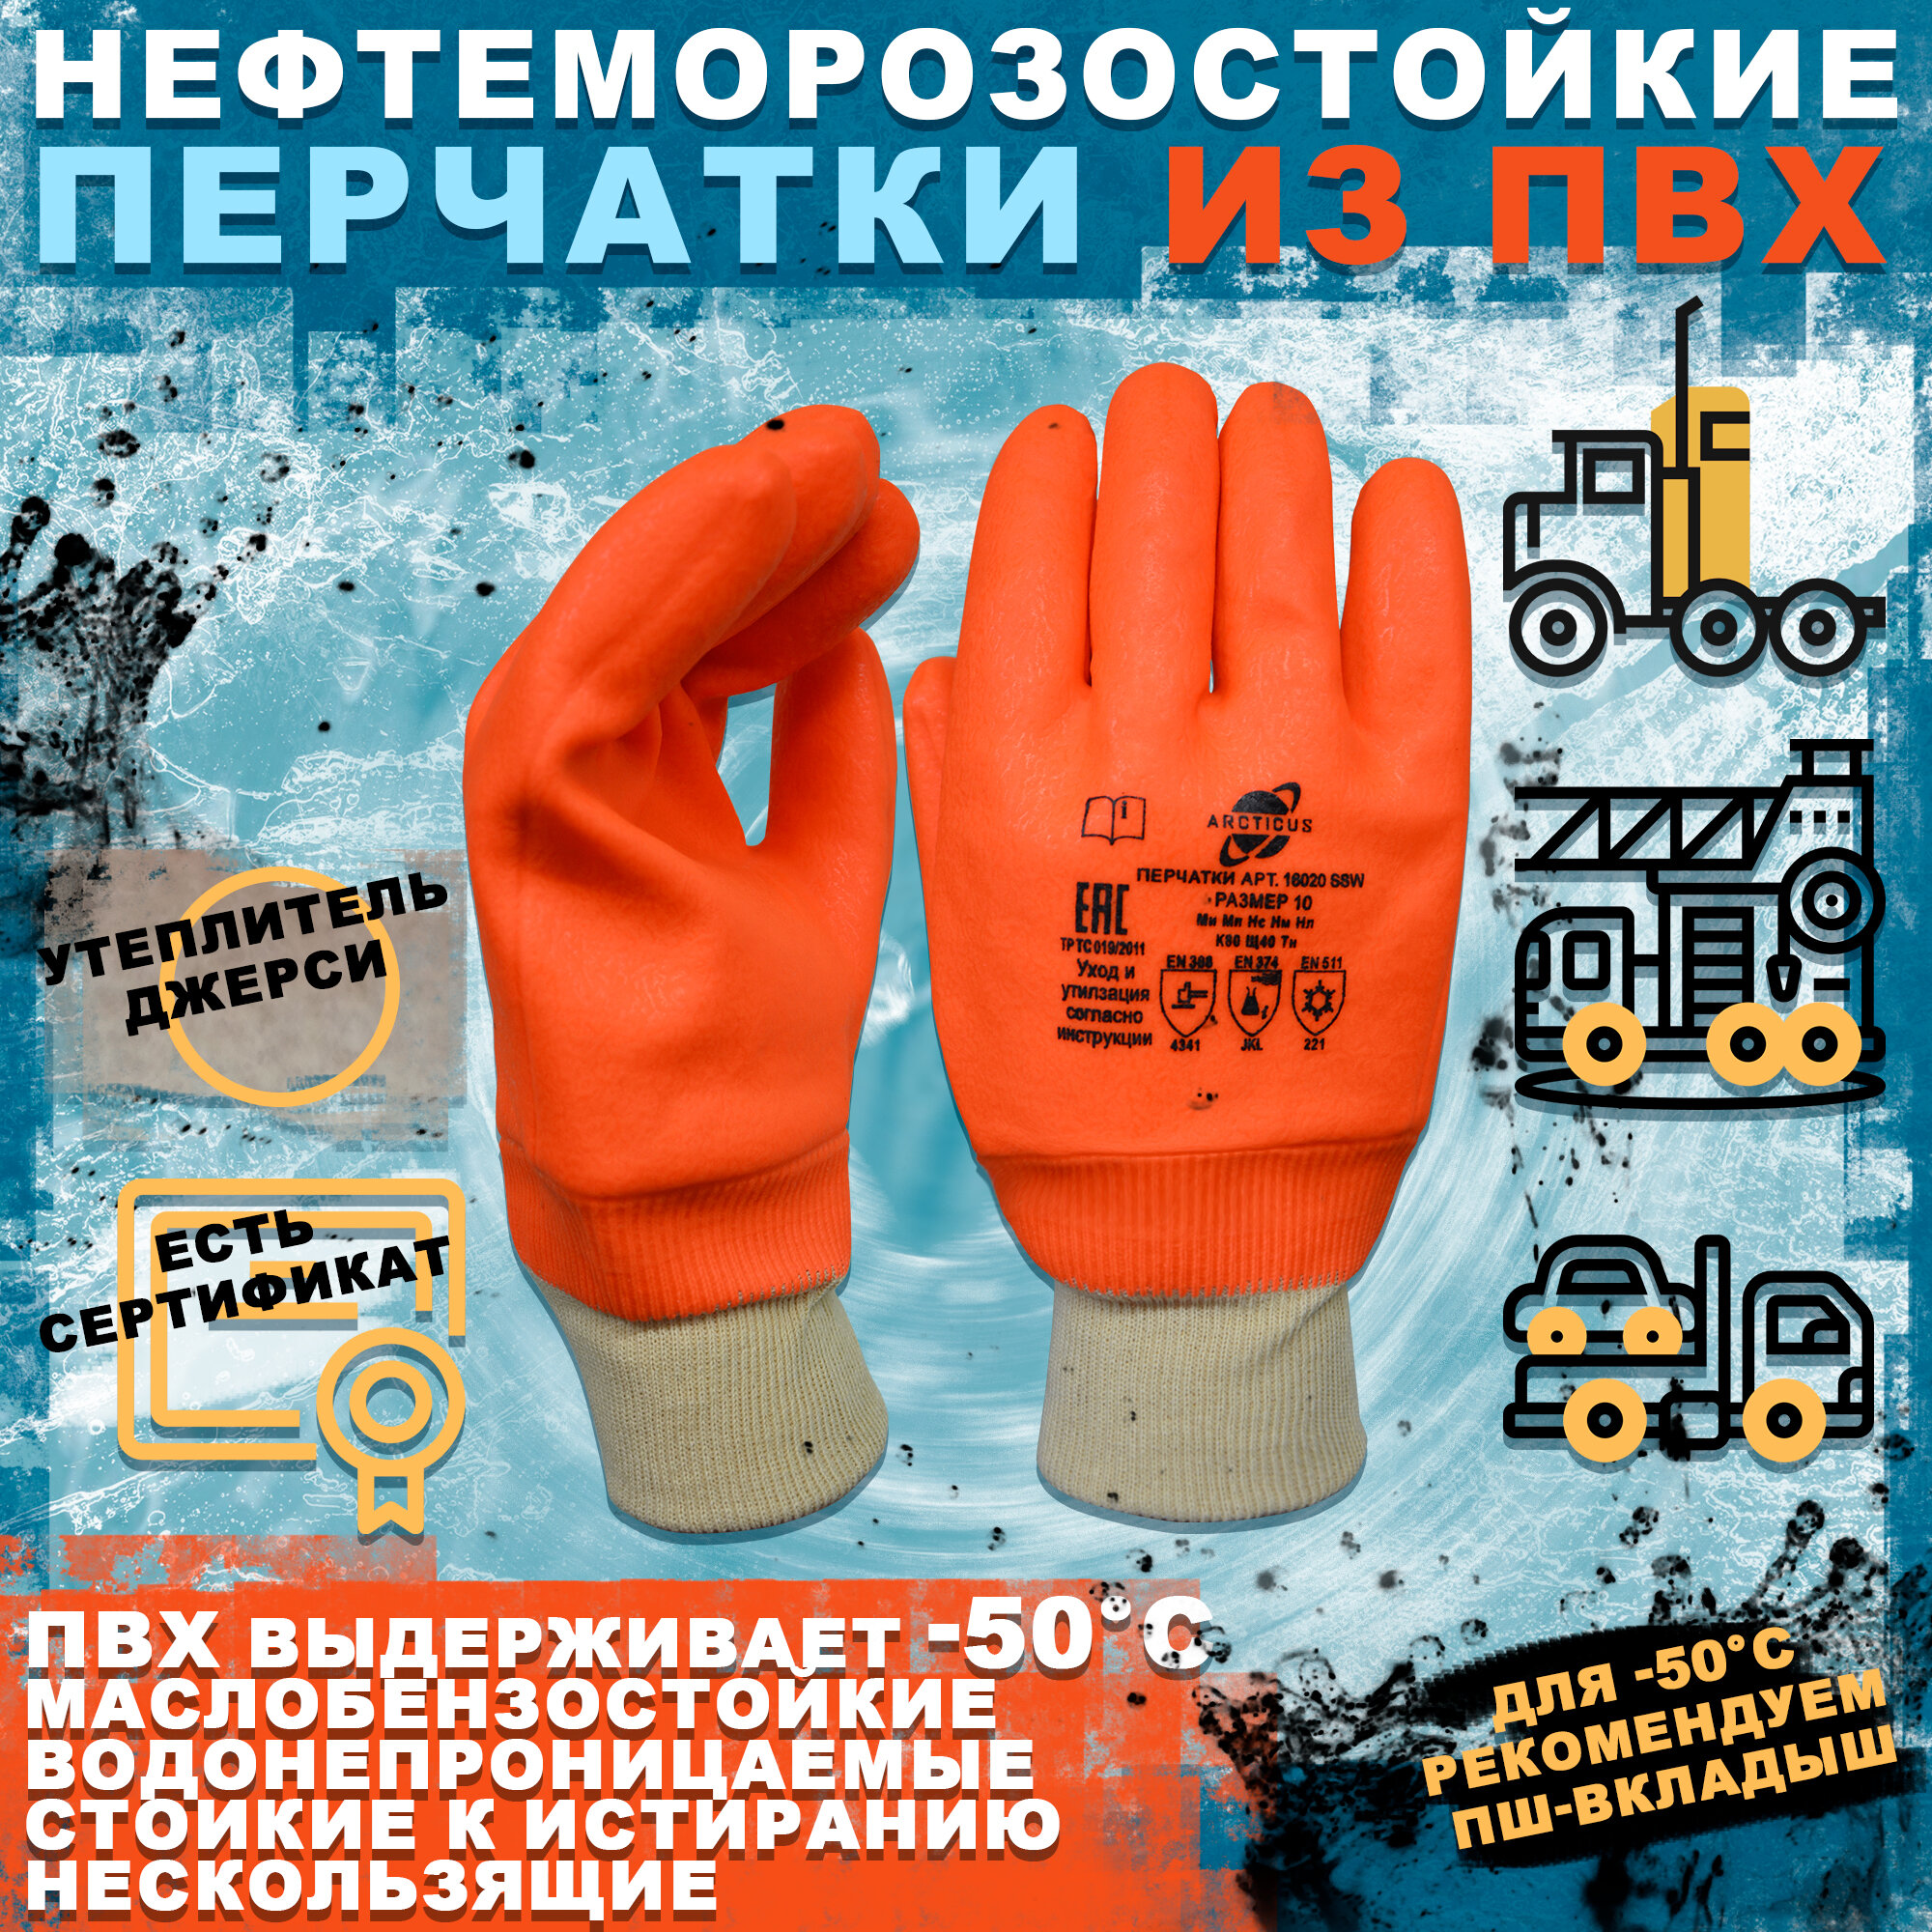 Нефтеморозостойкие перчатки с манжетом, ARCTICUS 16020 SSW, размер 10